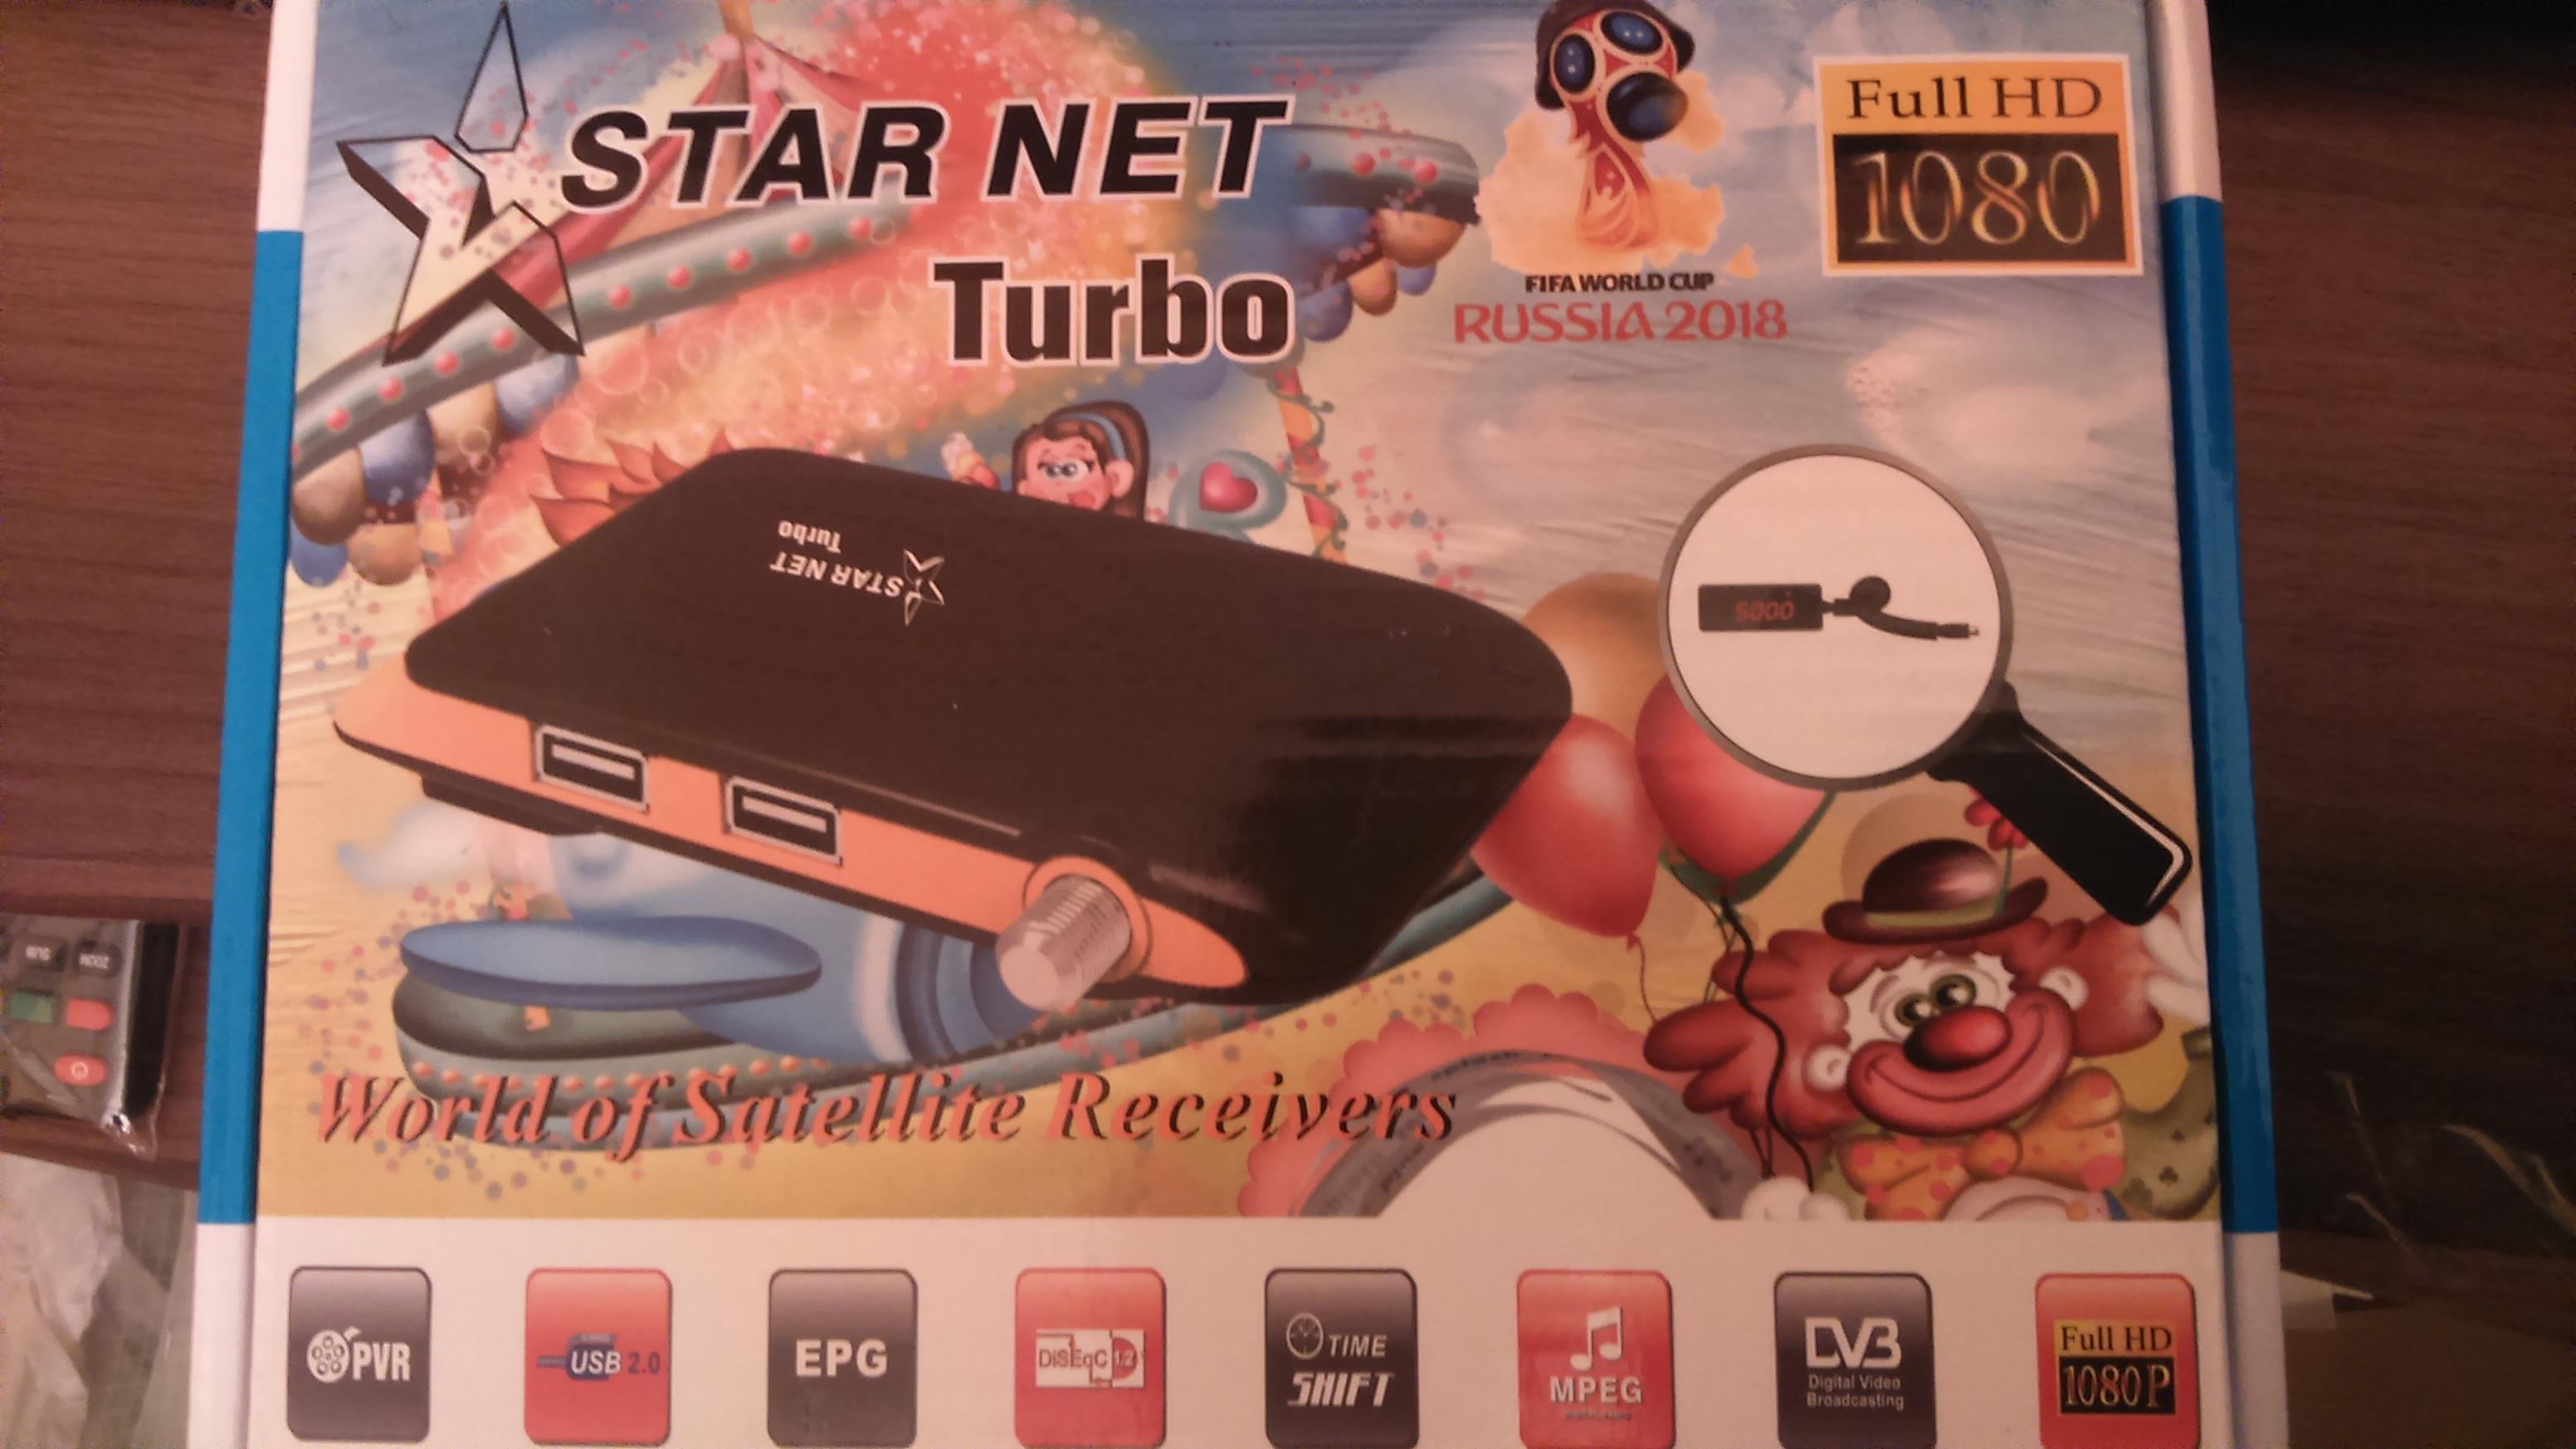 احدث ملف قنوات اسلامي انجليزي وسوفت تفعيل IPTV لـ STAR NET Turbo بتاريخ 13-4-2019 397770071